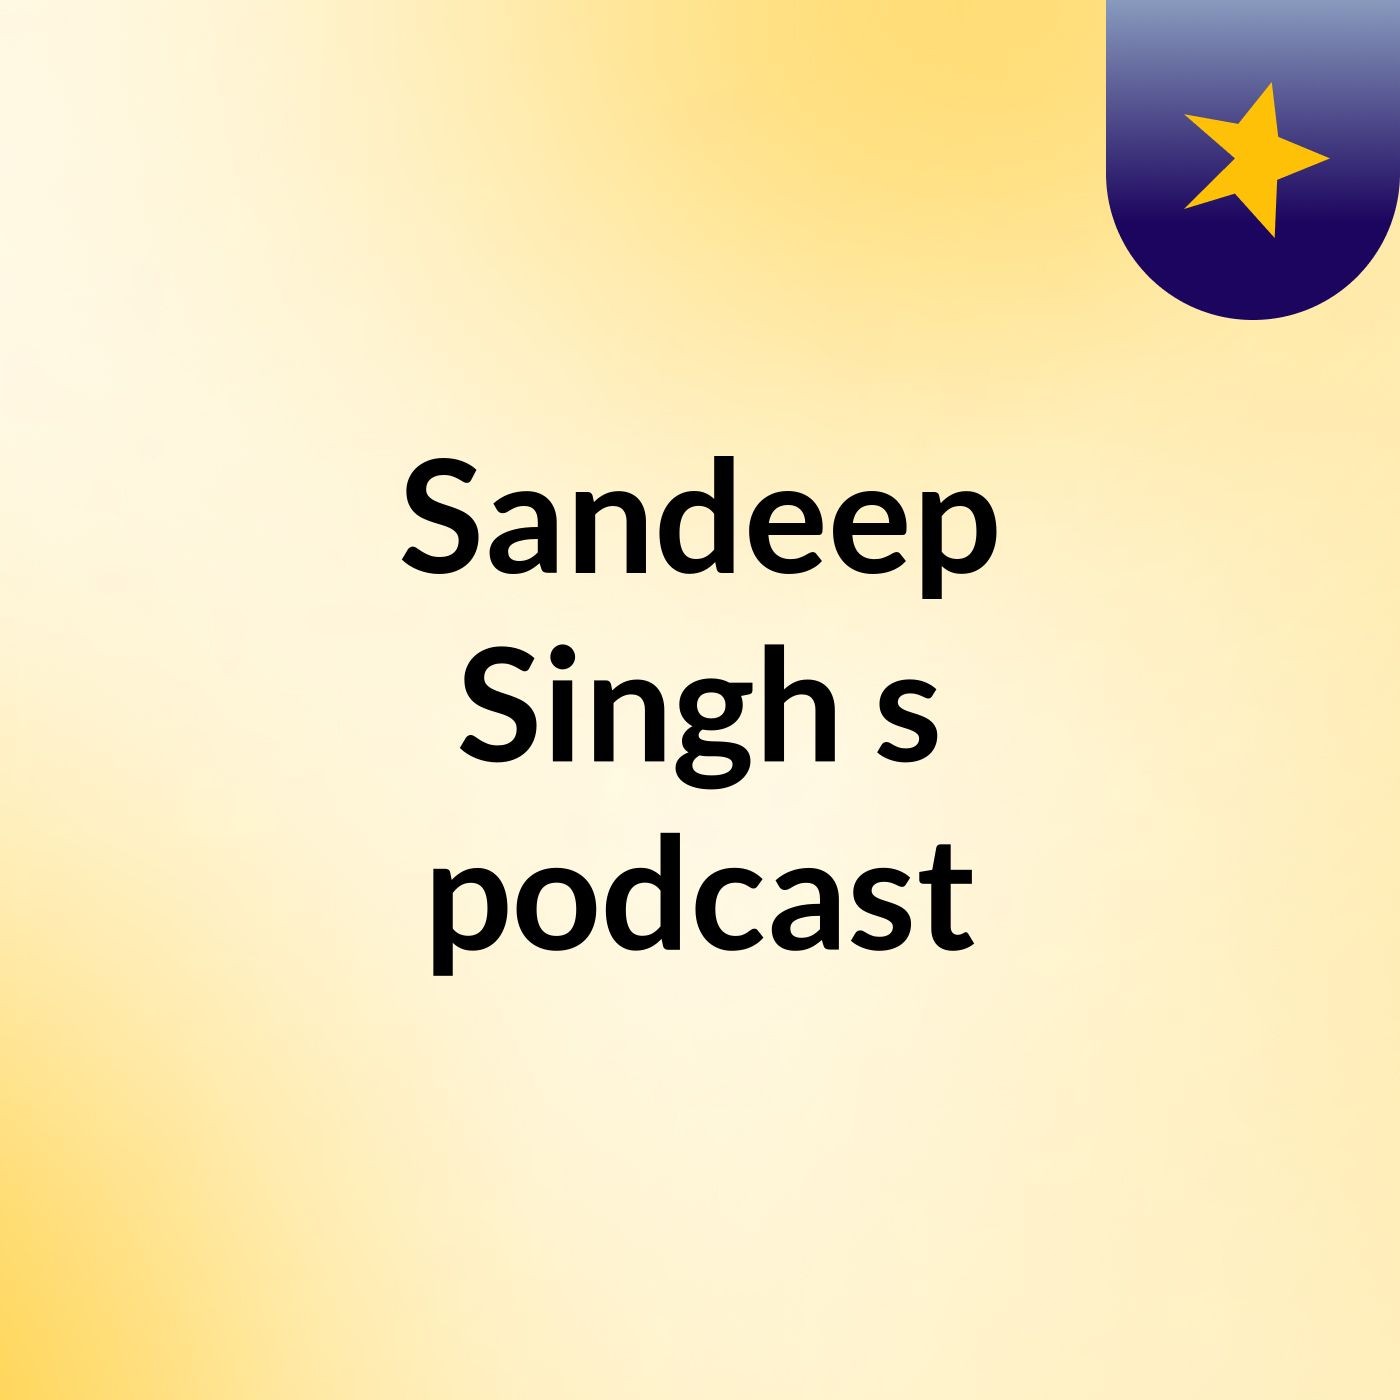 Sandeep Singh's podcast